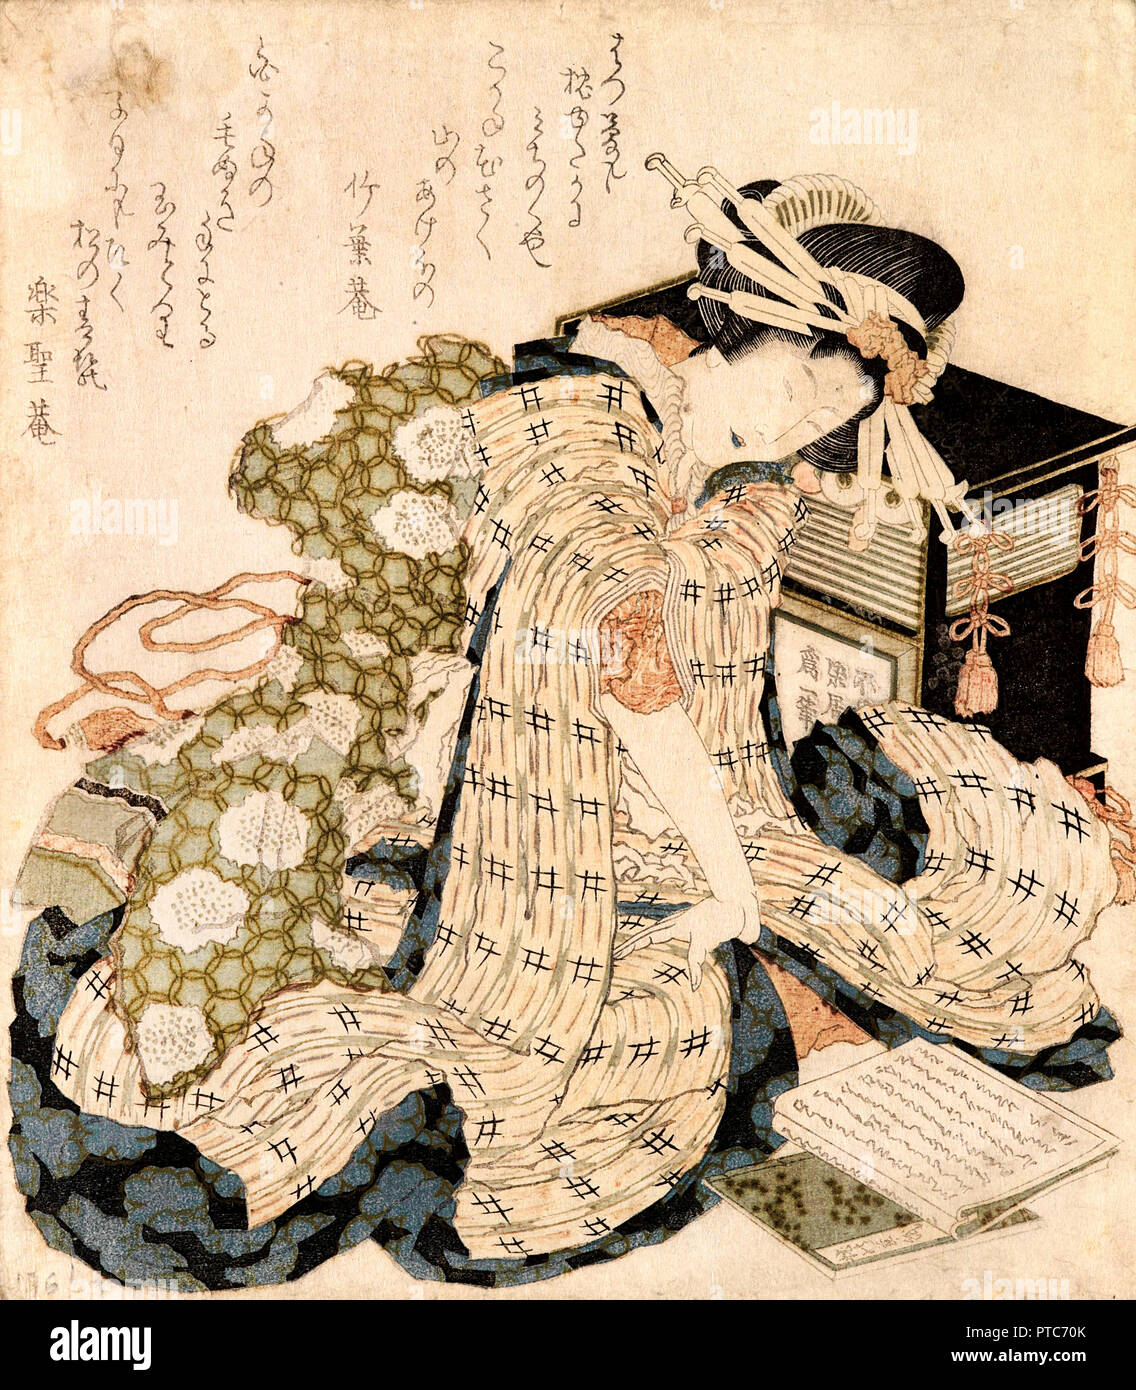 Katsushika Hokusai, courtisane endormie, fin du 18e siècle - début du xixe siècle, gravure sur bois en couleur, Musée des Beaux Arts de Bilbao, Bilbao, Espagne. Banque D'Images